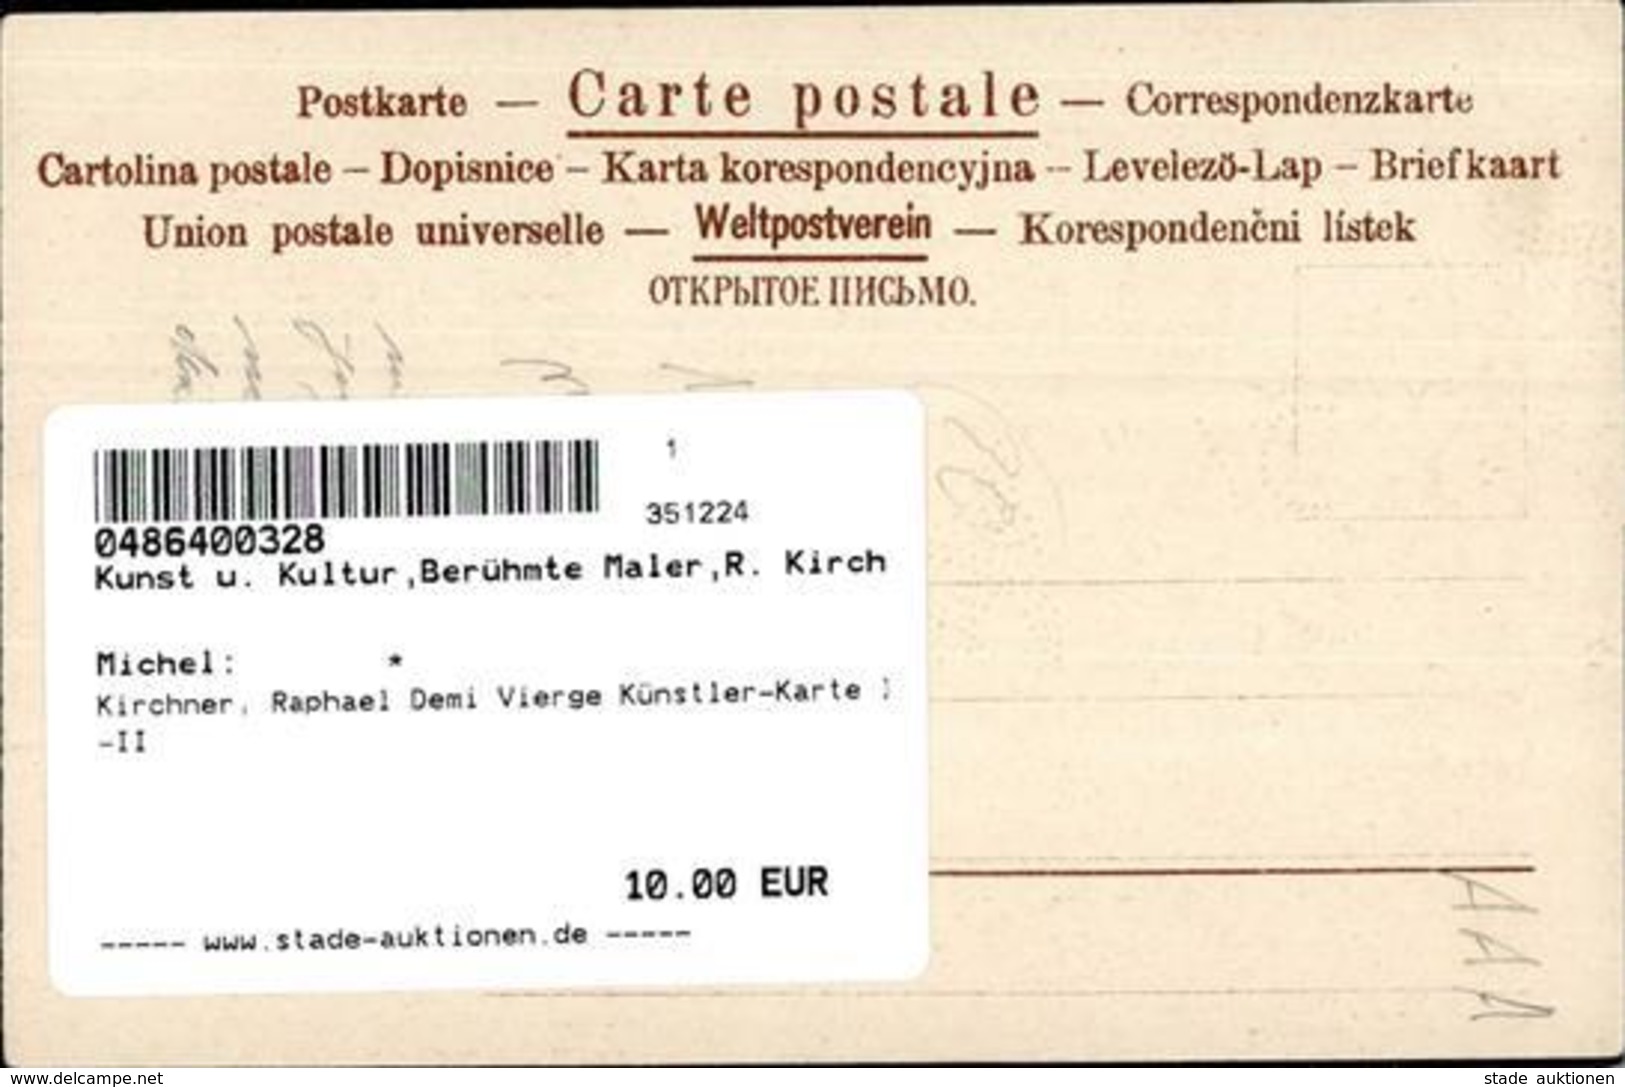 Kirchner, Raphael Demi Vierge Künstler-Karte I-II - Kirchner, Raphael